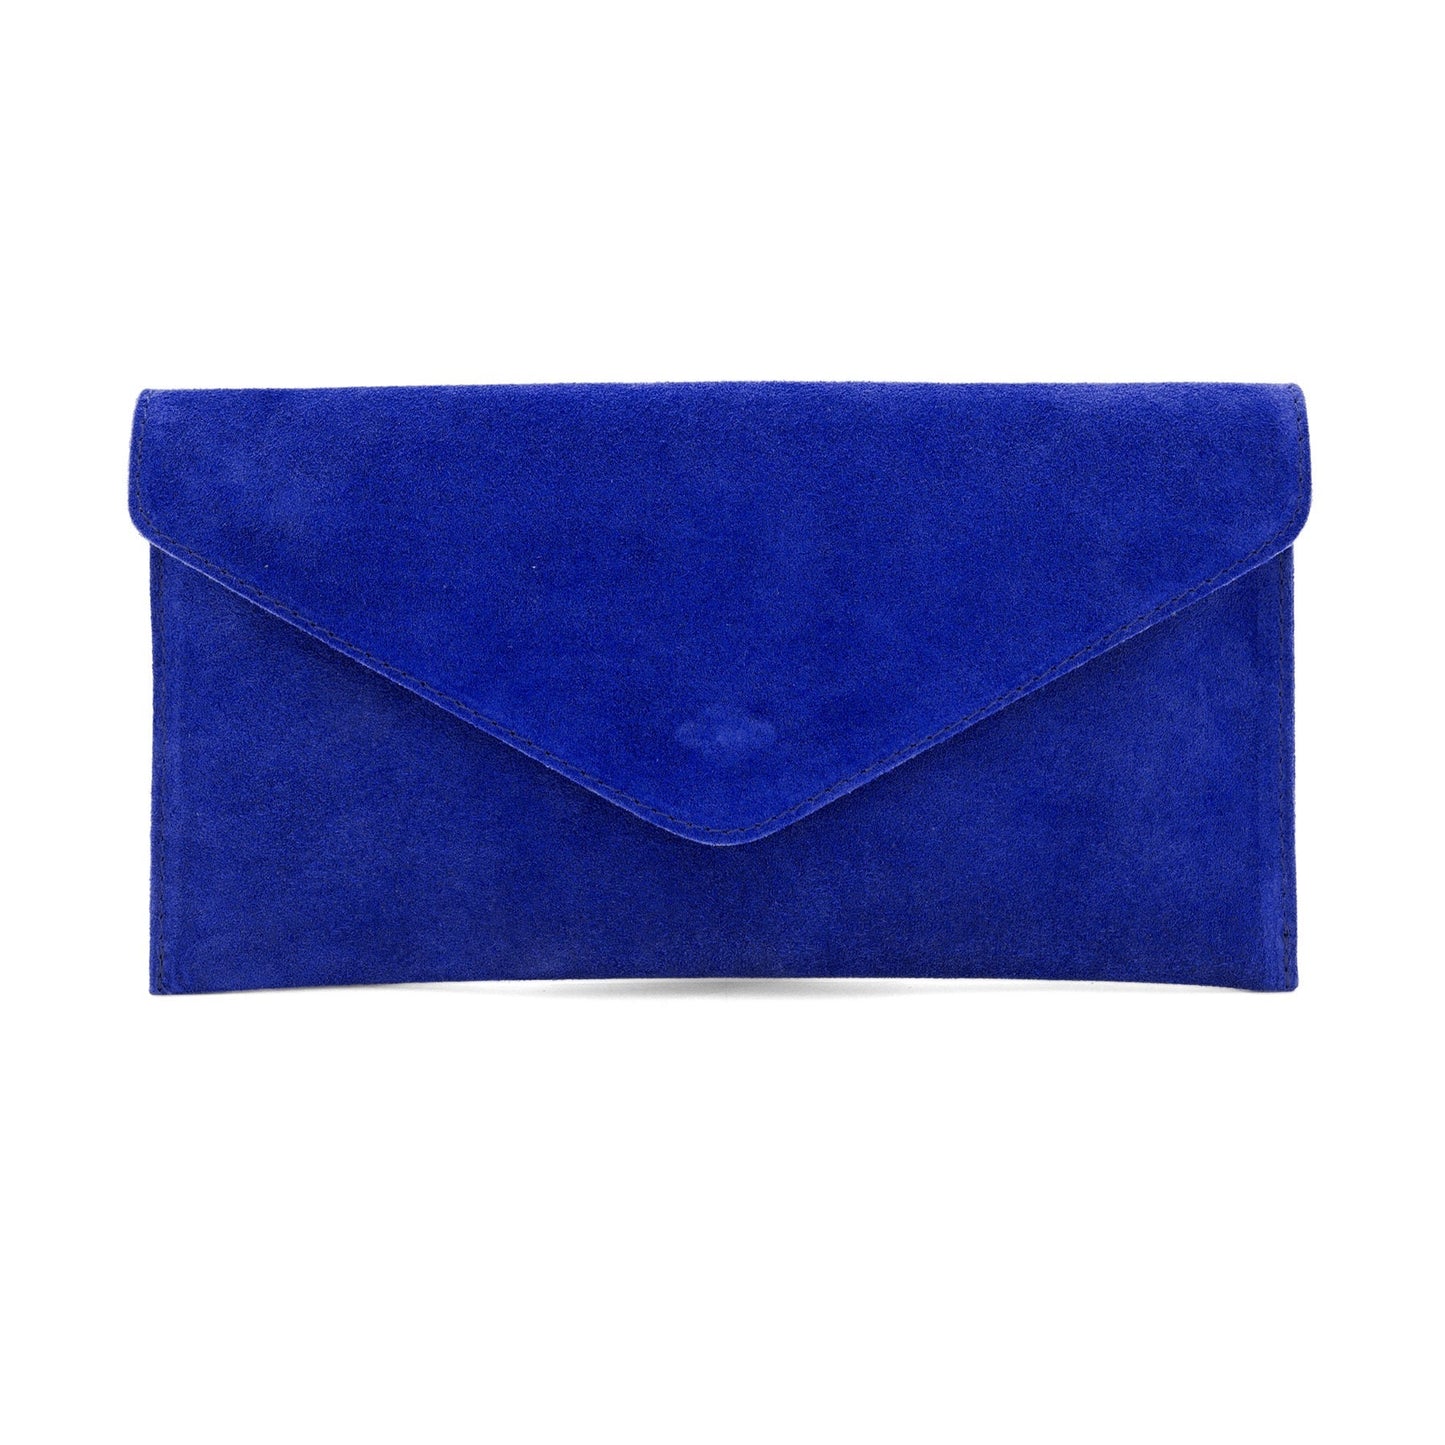 Royal Blue Envelope Clutch Bag